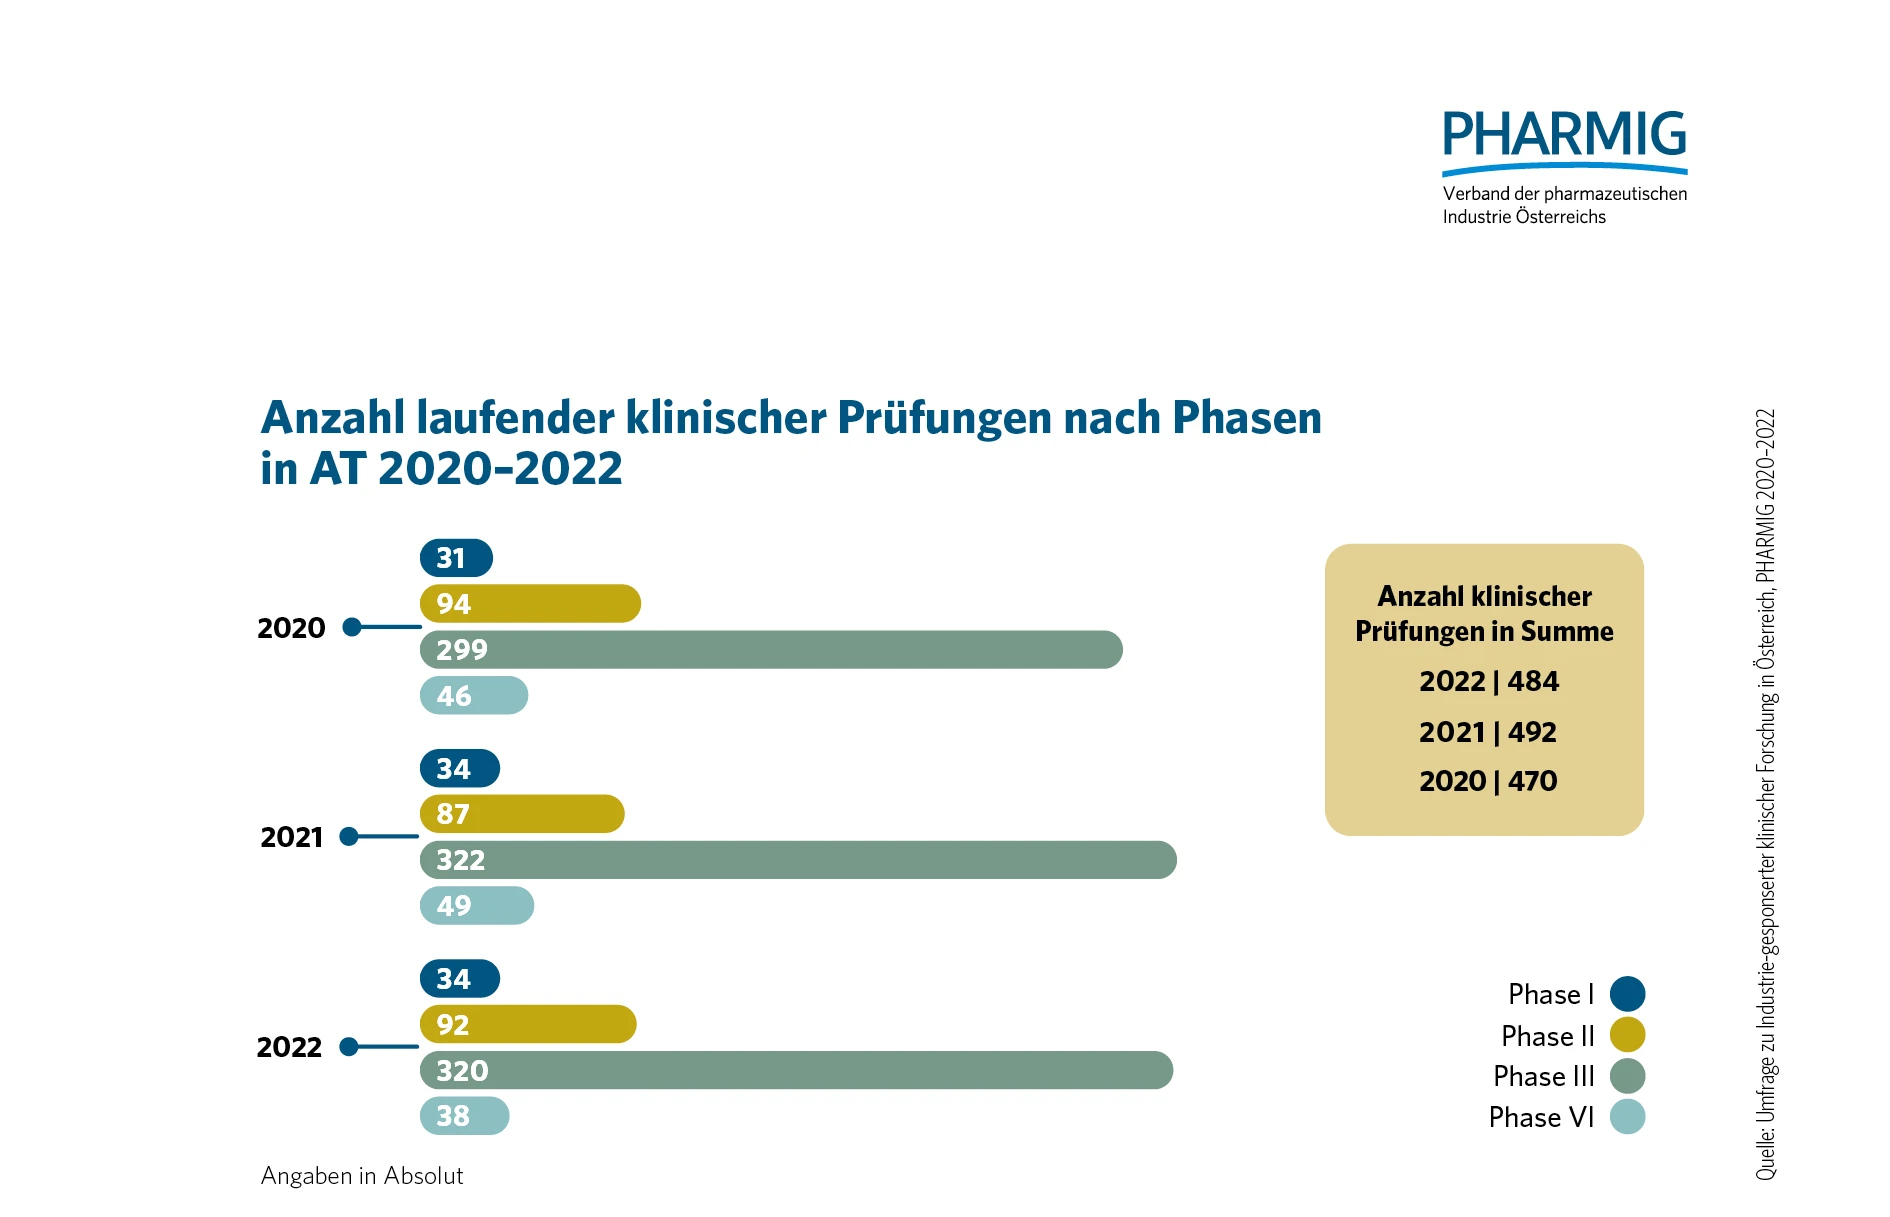 © 4.2 Anzahl laufender klinischer Prüfungen nach Phasen (2020-2022)